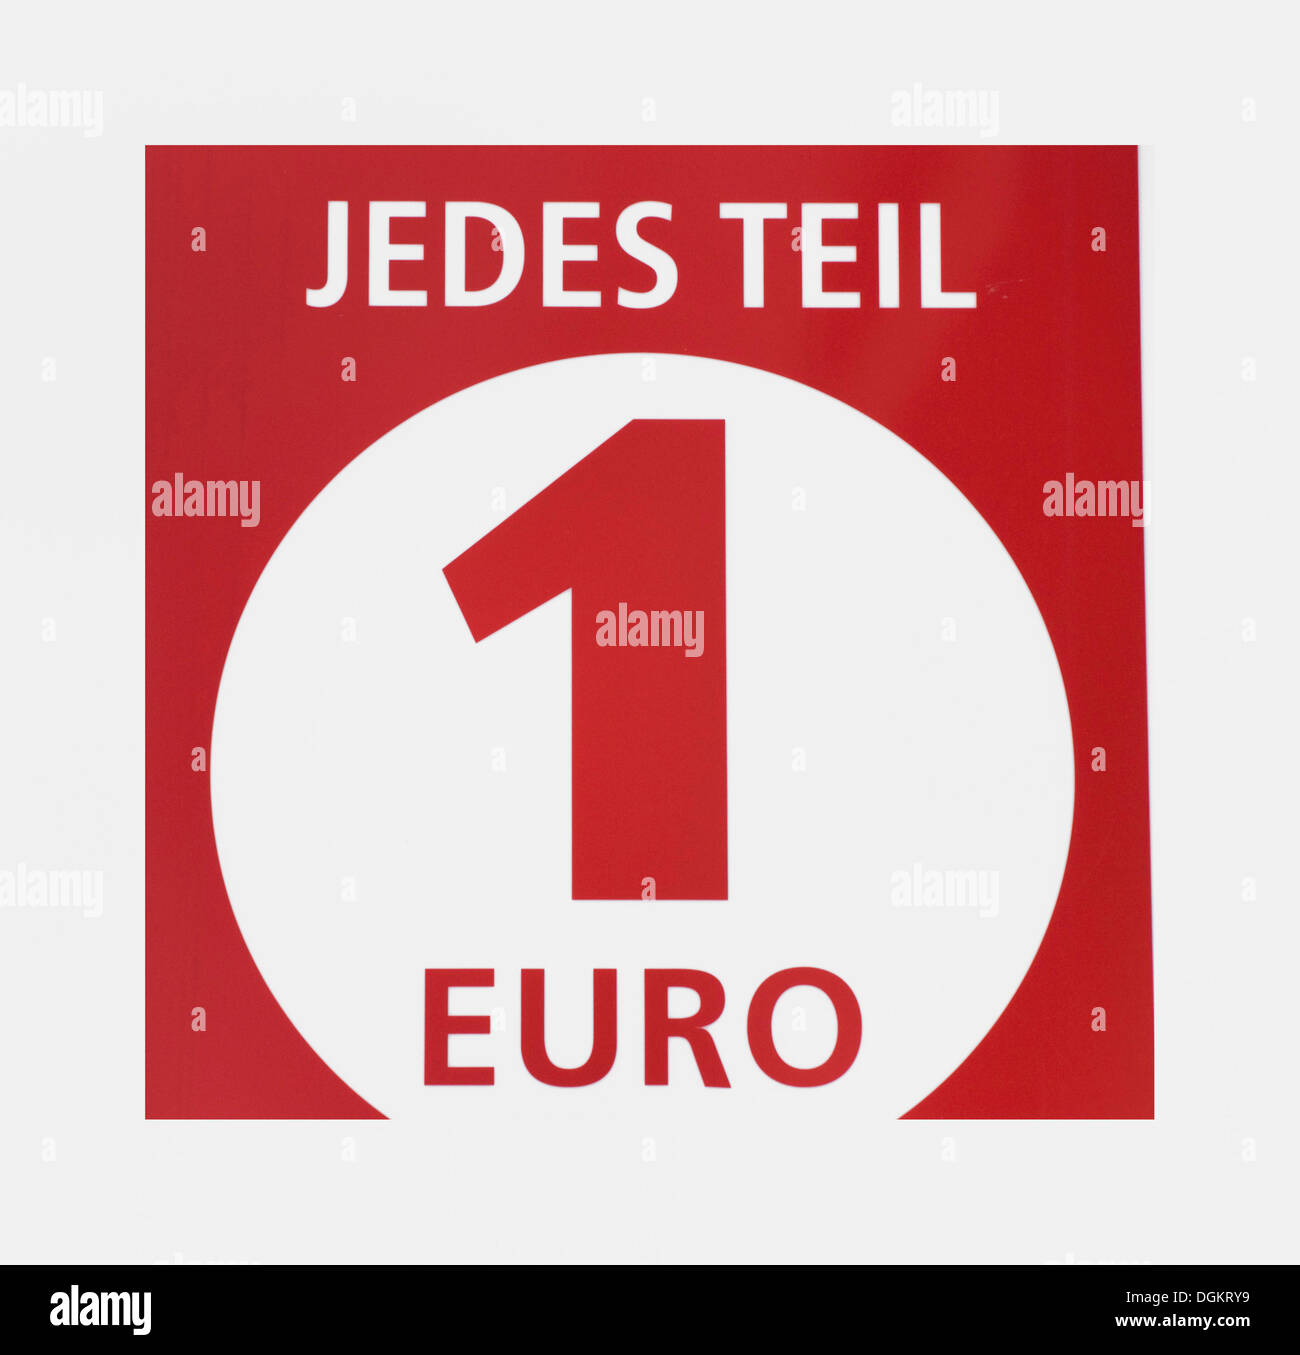 Jedes Teil 1 Euro, l'allemand pour chaque élément : 1 Euro, Euro shop, commode Banque D'Images